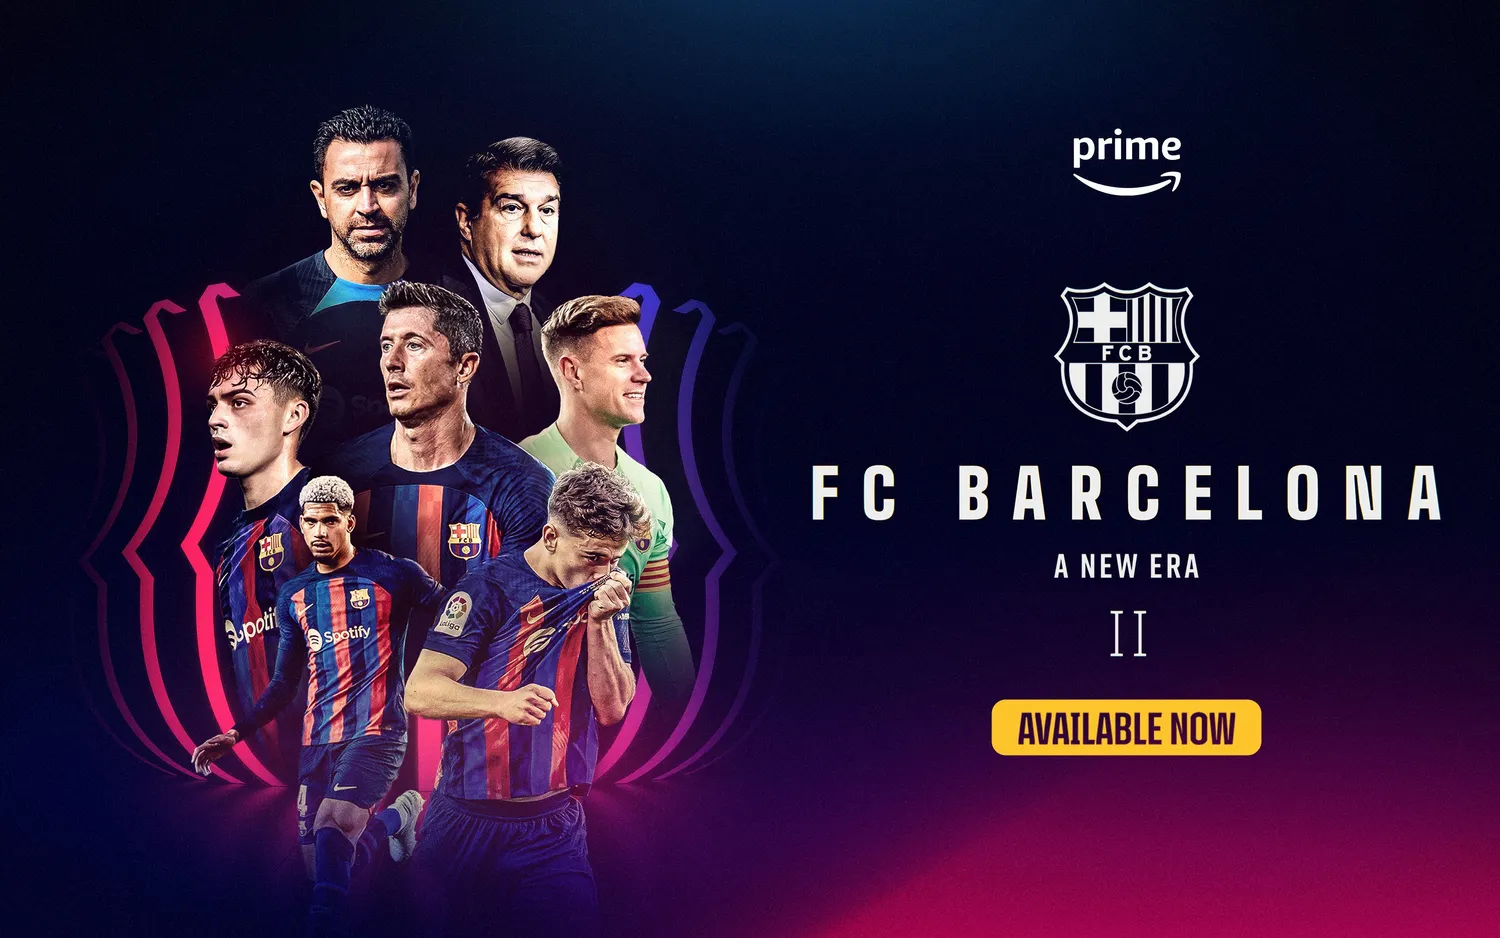 Druhá série dokumentárního seriálu "FC Barcelona, nová éra" je nyní k dispozici